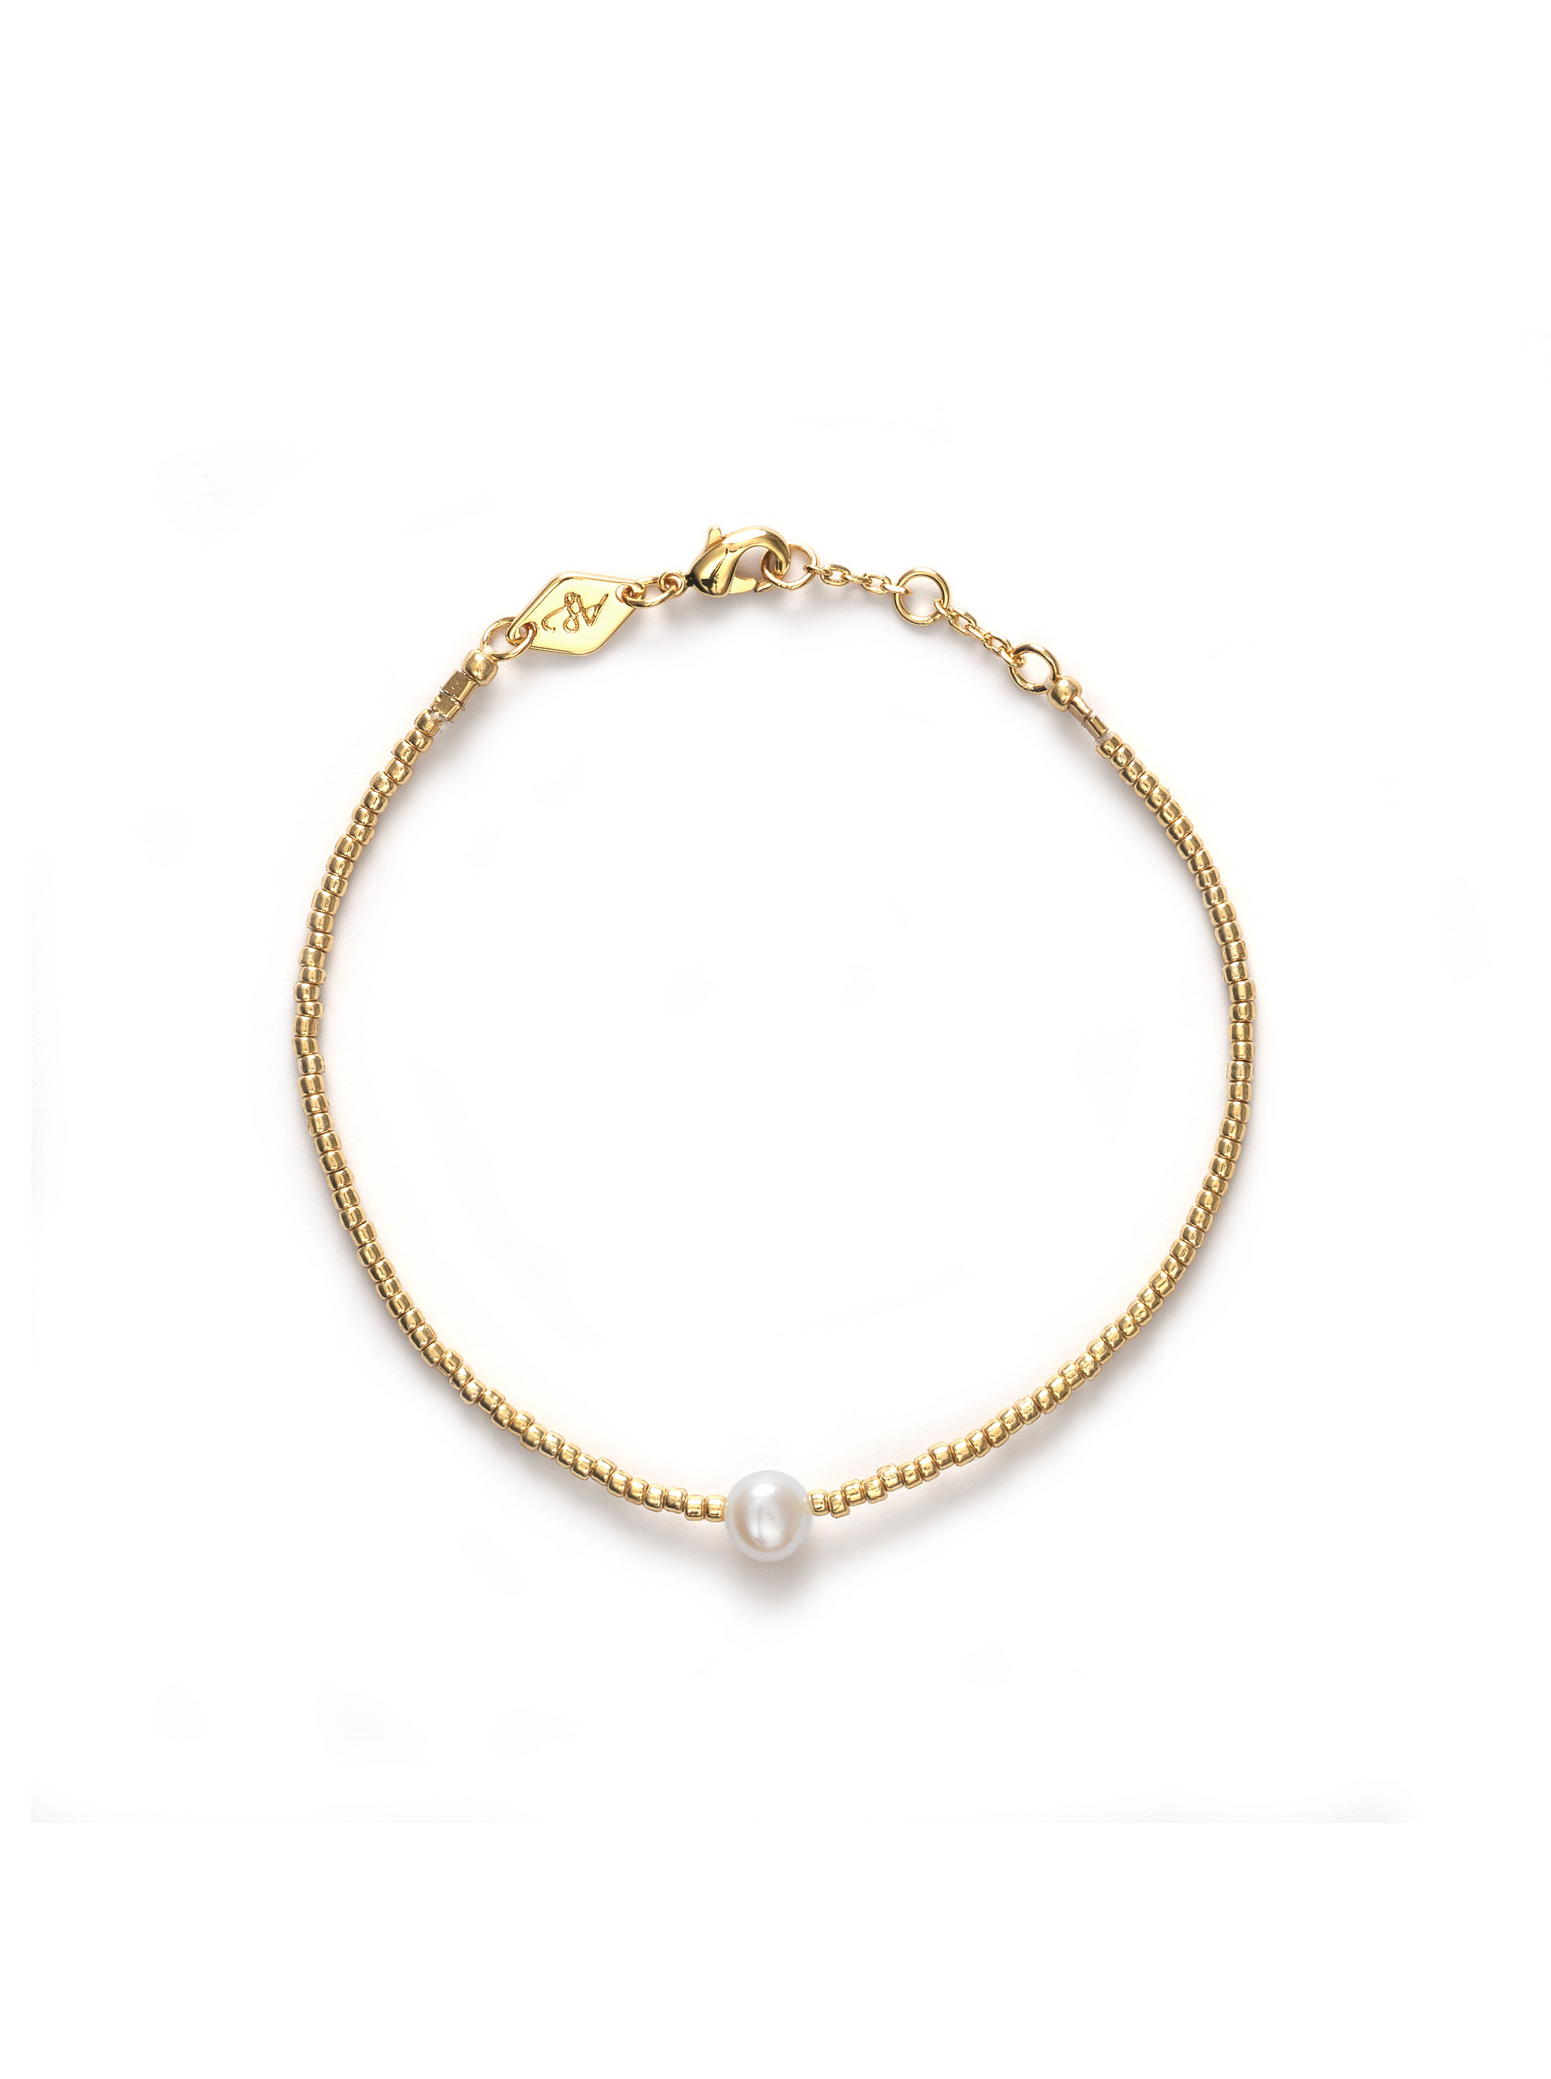 Milepæl dragt utilfredsstillende ANNI LU | Pearly Bracelet // Gold | Køb armbånd hos NORI NORI